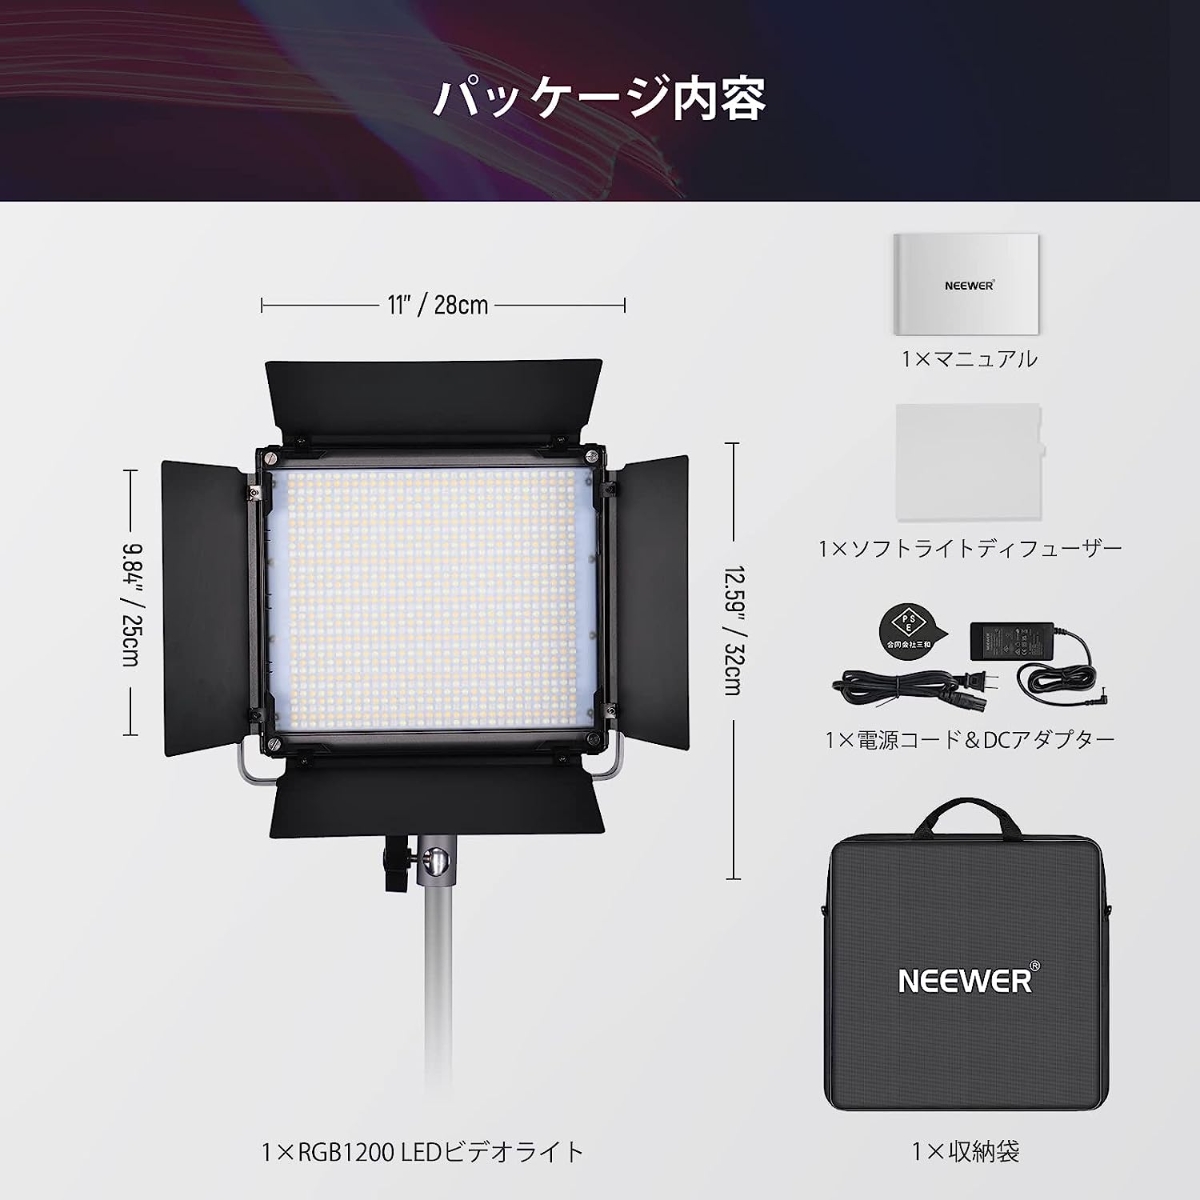 【新品未使用】NEEWER 60W RGB1200ビデオライト